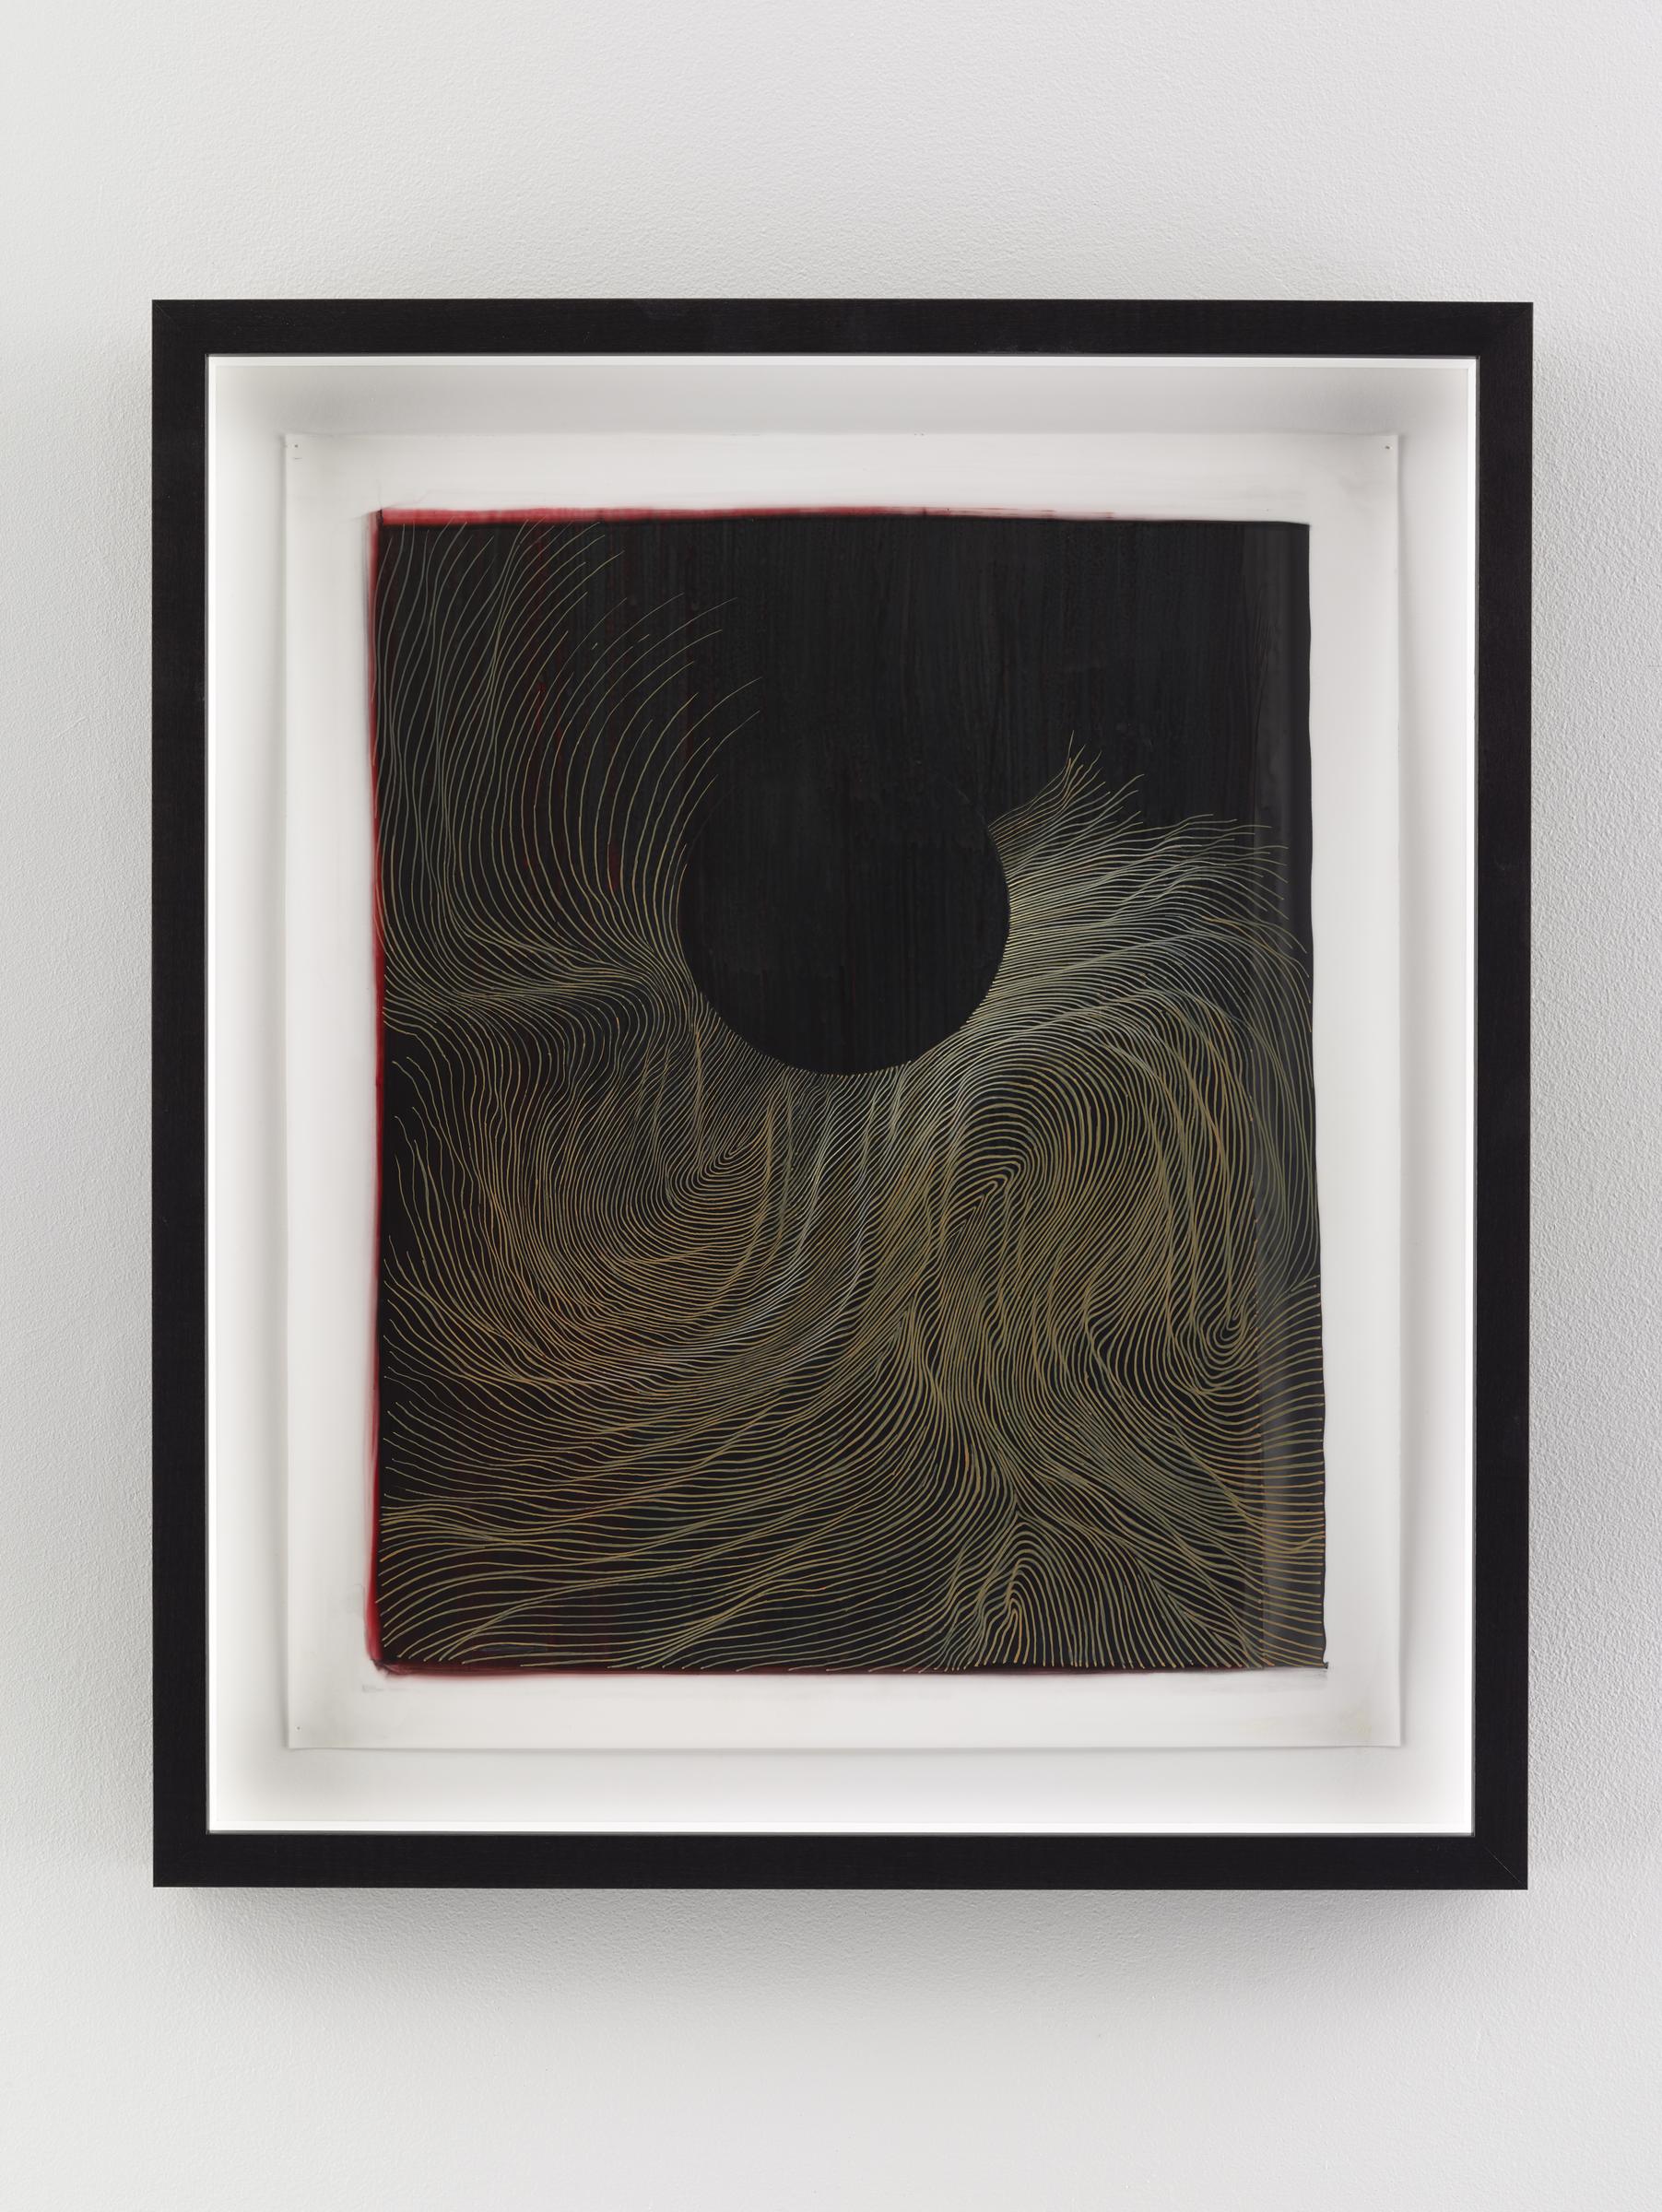 LINN MEYERS Untitled, 2014, ink on mylar, 20 x 17 inches, SGI2844.